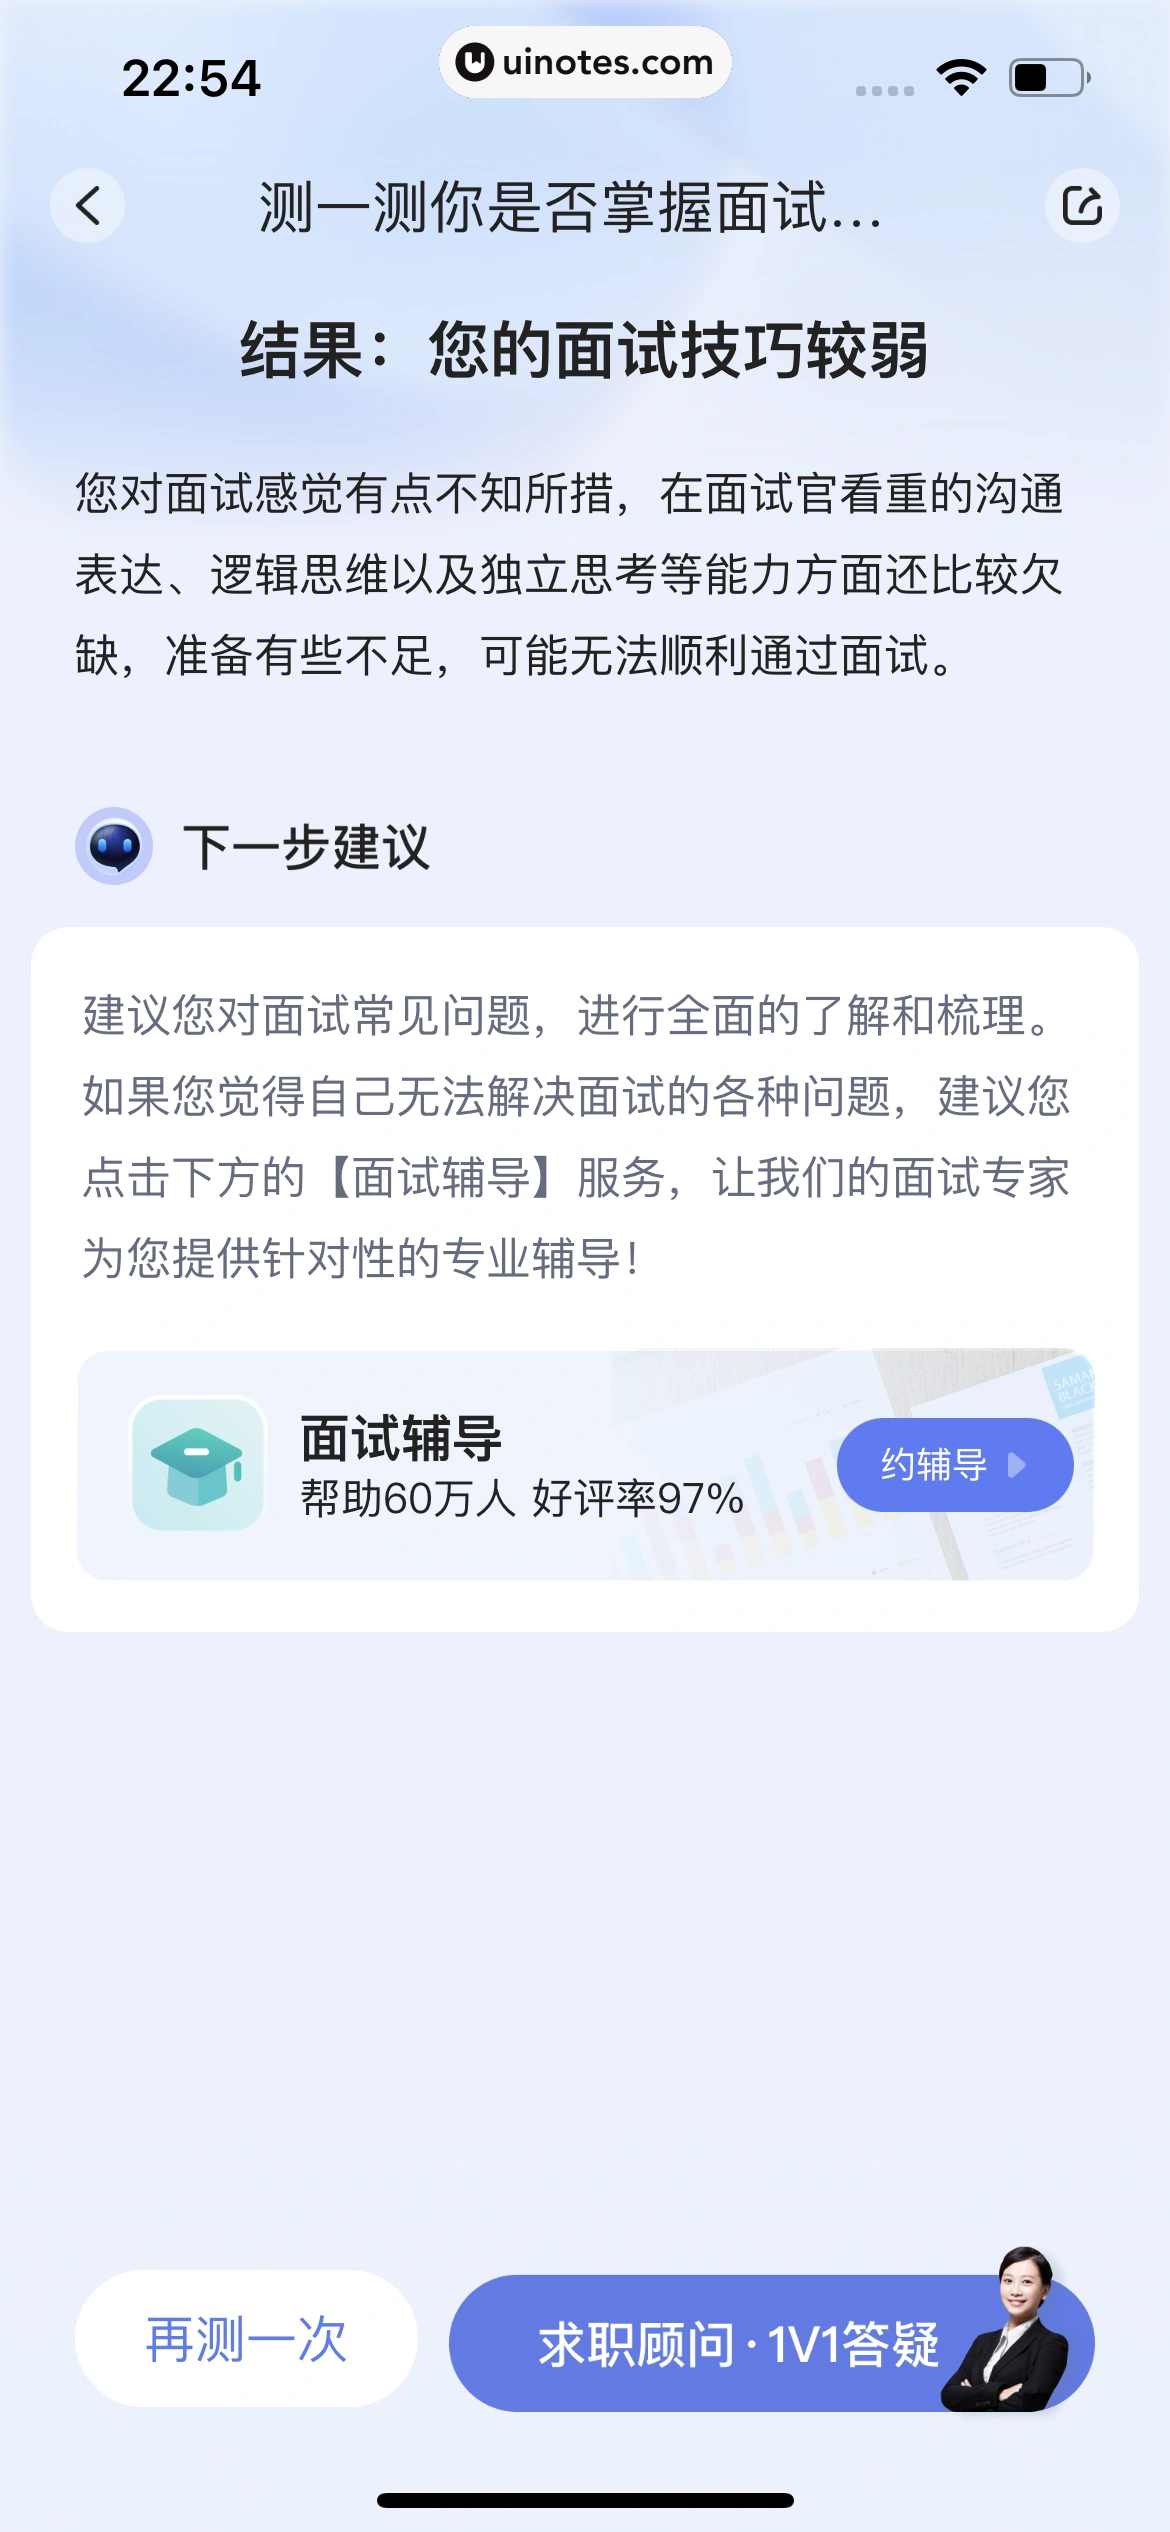 智联招聘 App 截图 356 - UI Notes